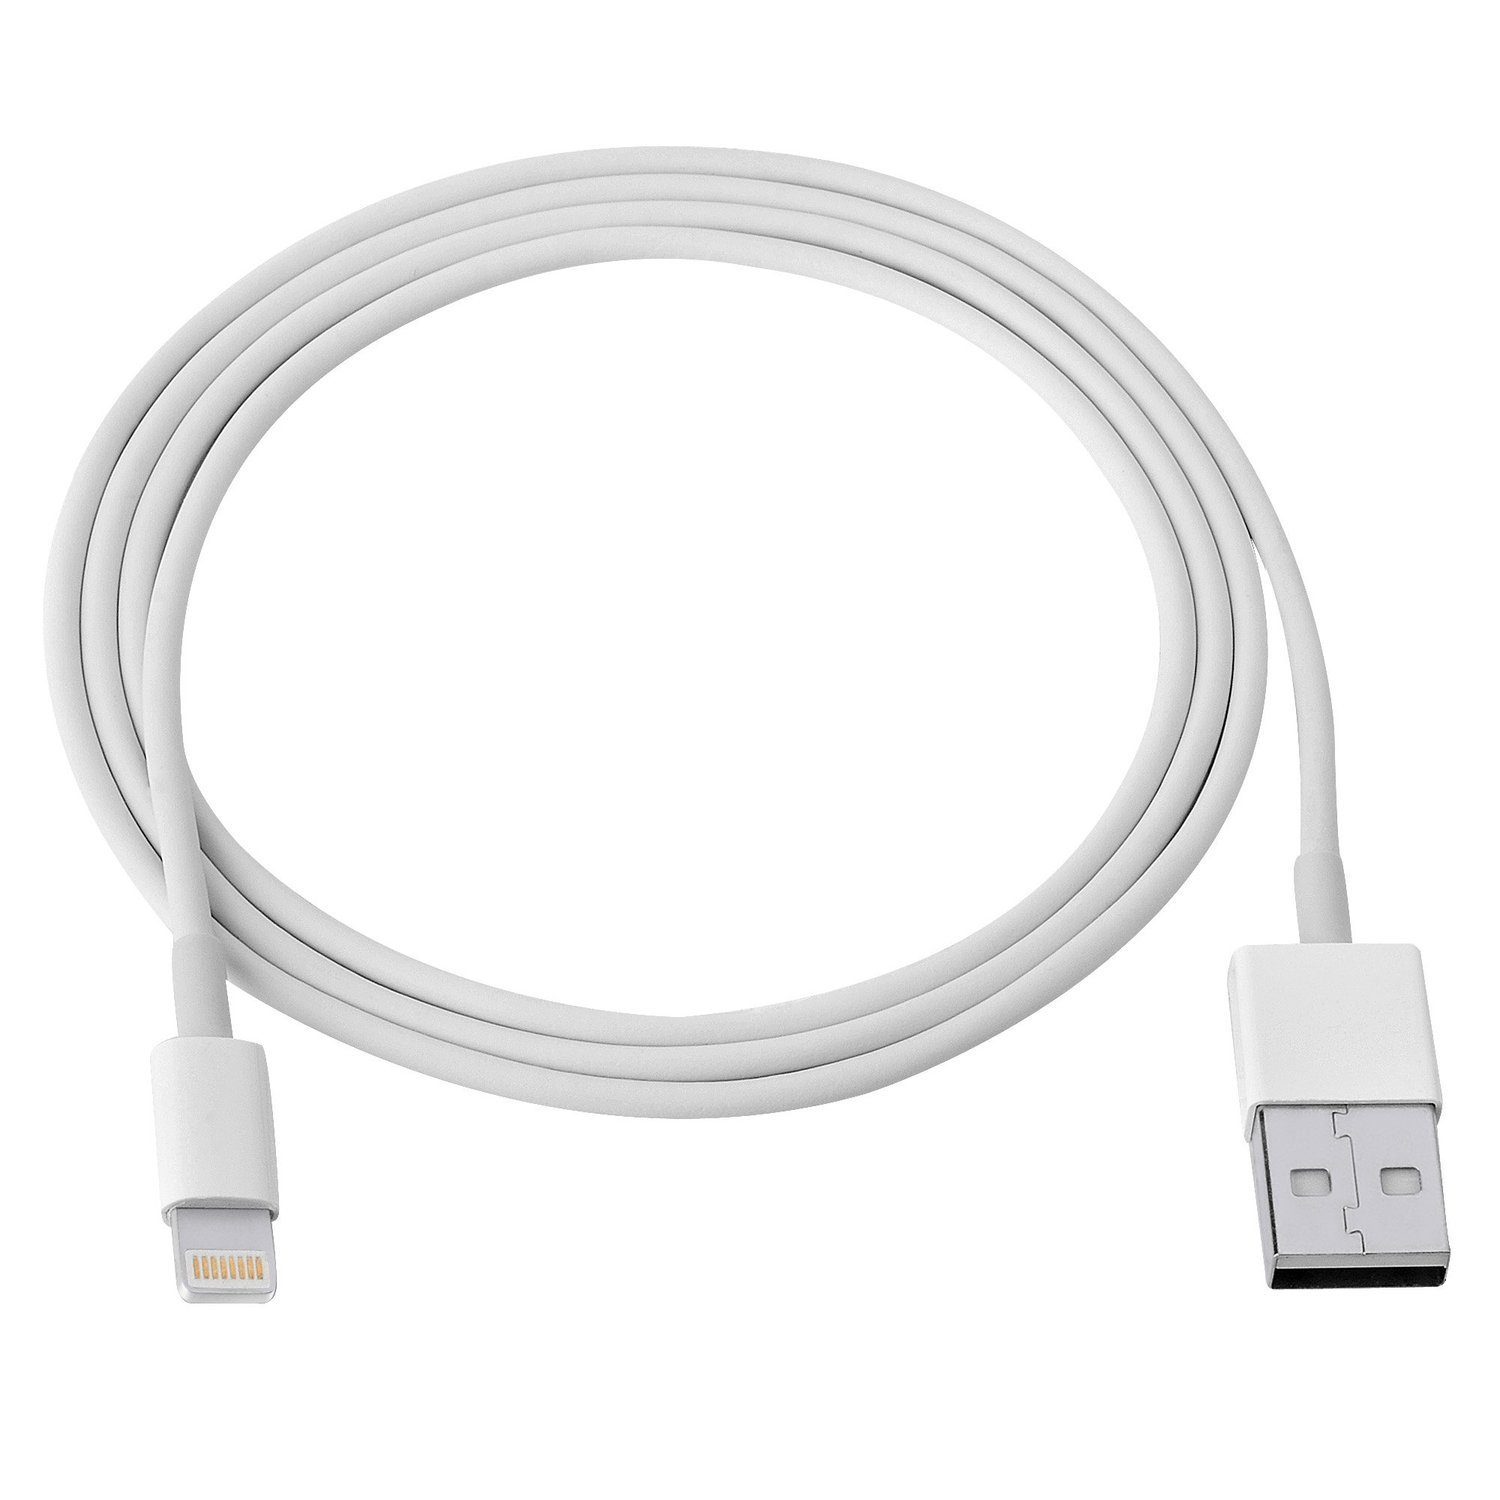 Cable Lightning Blanc iPhone - Accessoire téléphonie DUST - 0